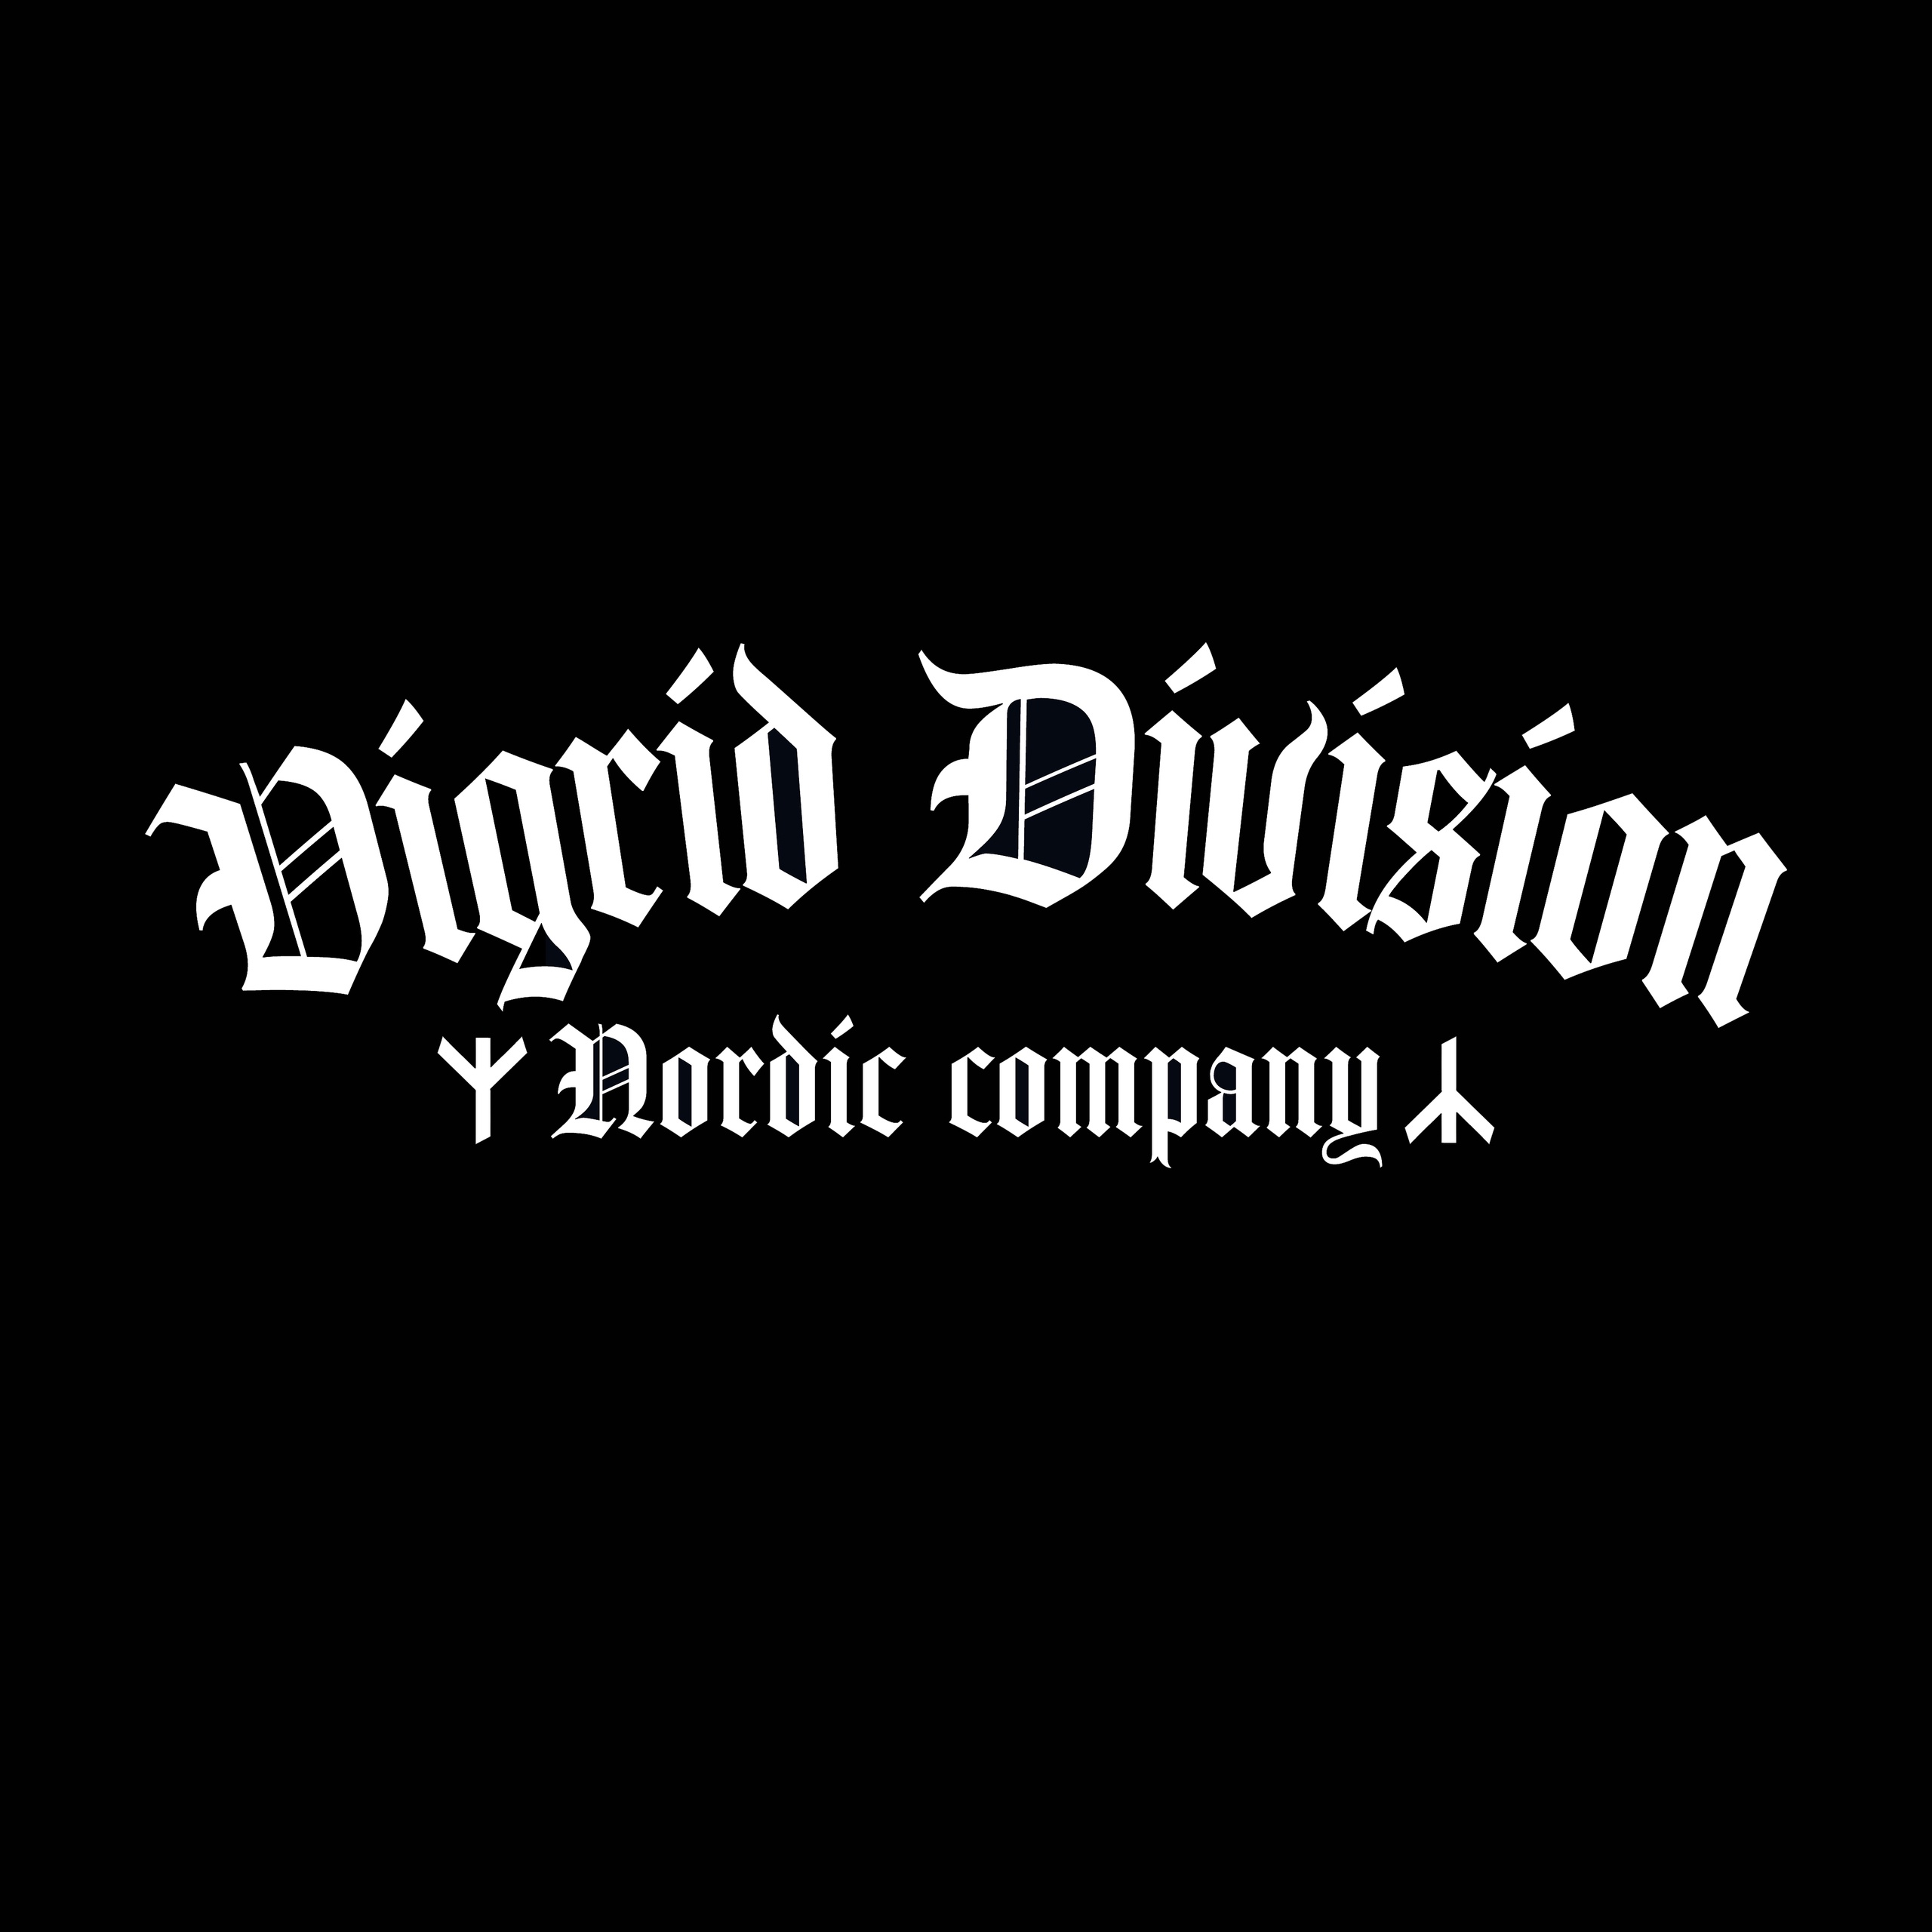 Логотип VIGRID DIVISION